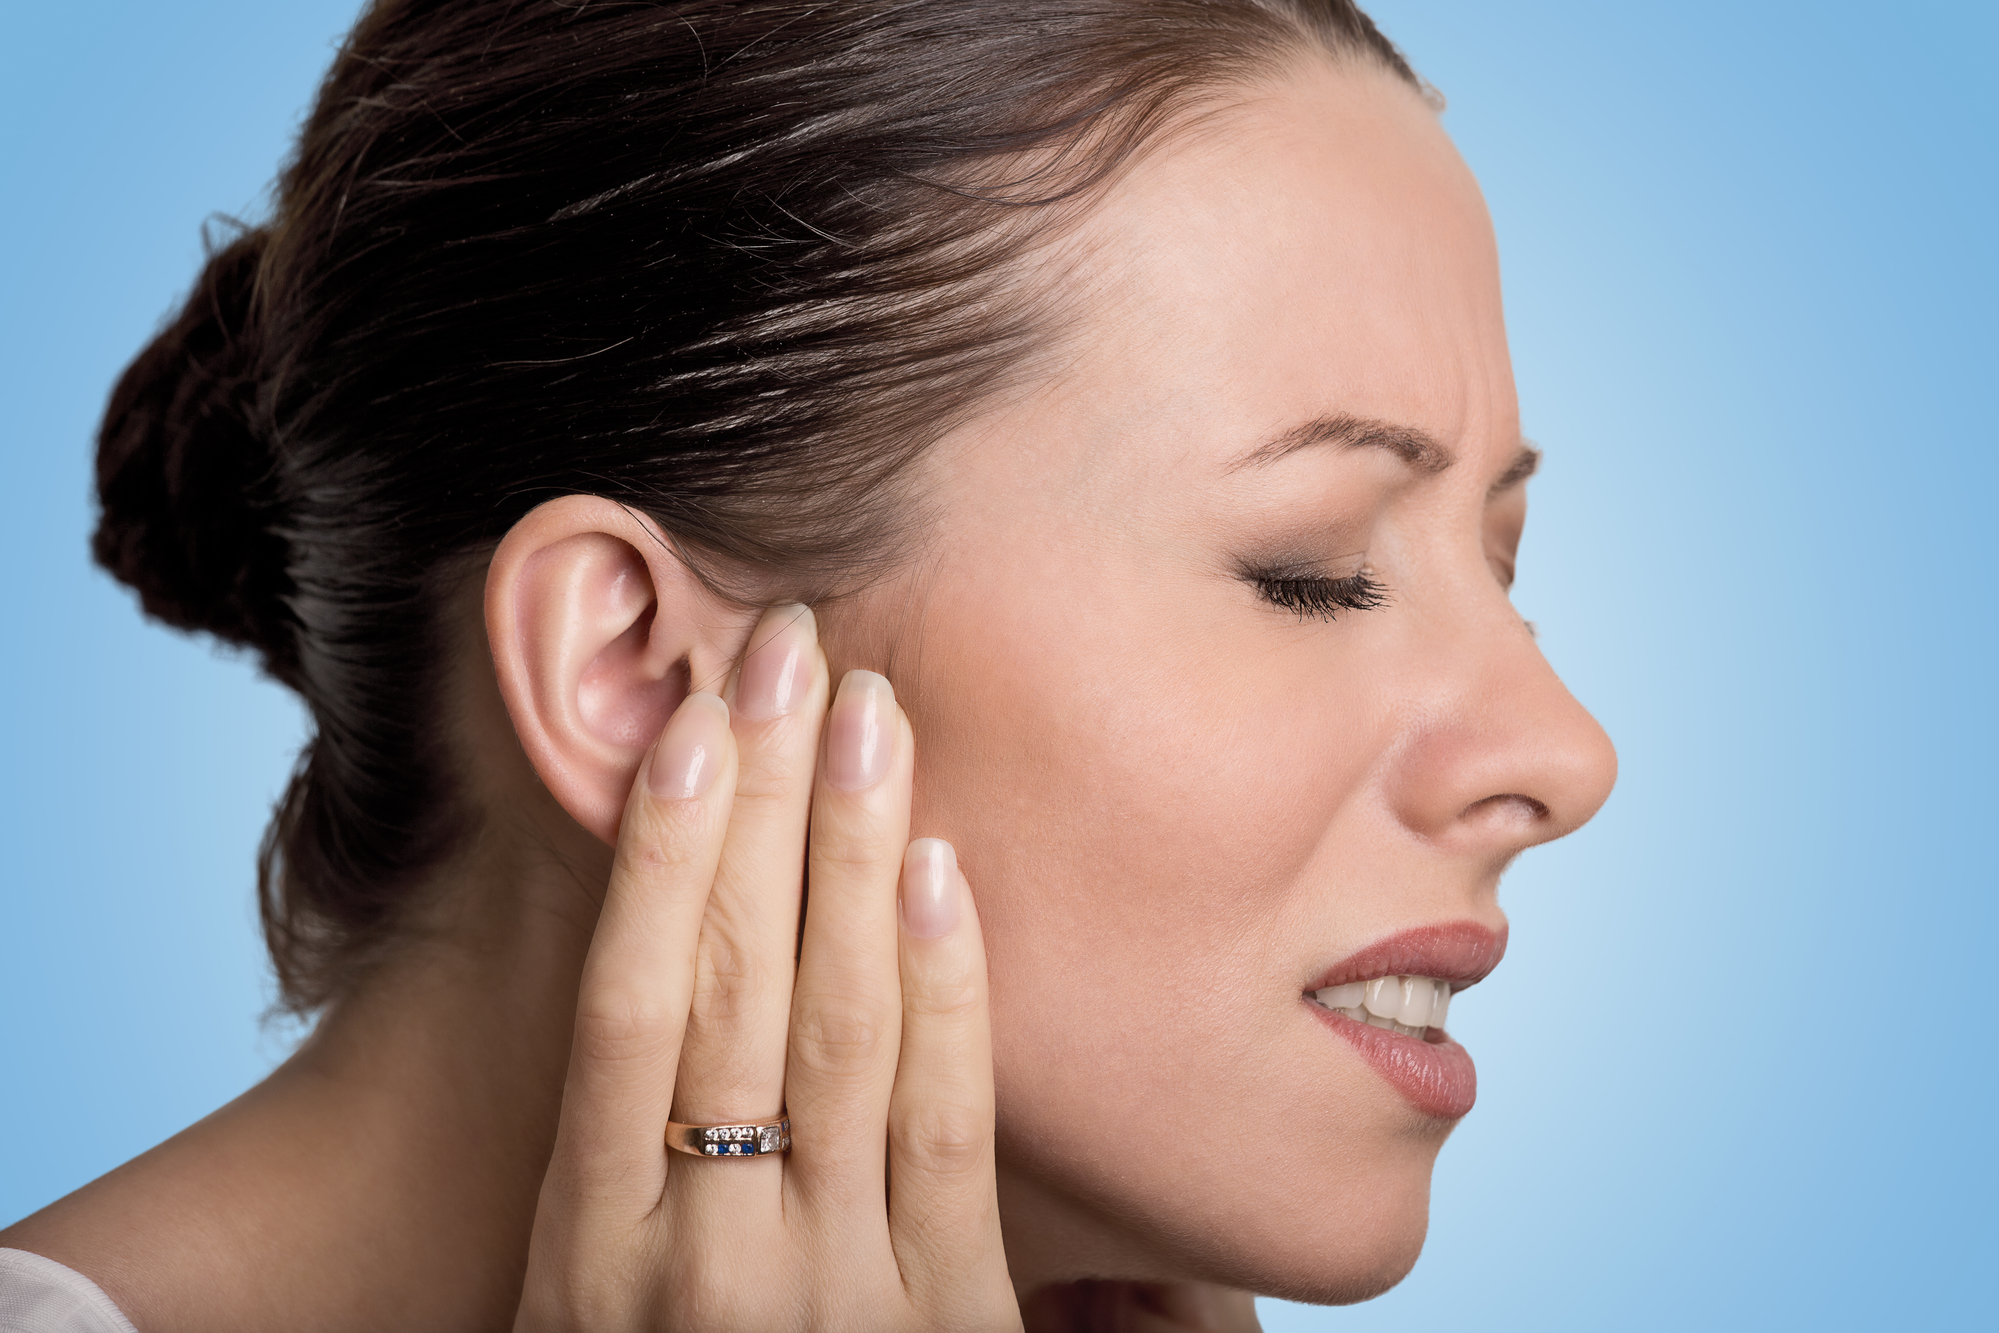 Zašto odrasli i dalje mogu dobiti infekcije uha?